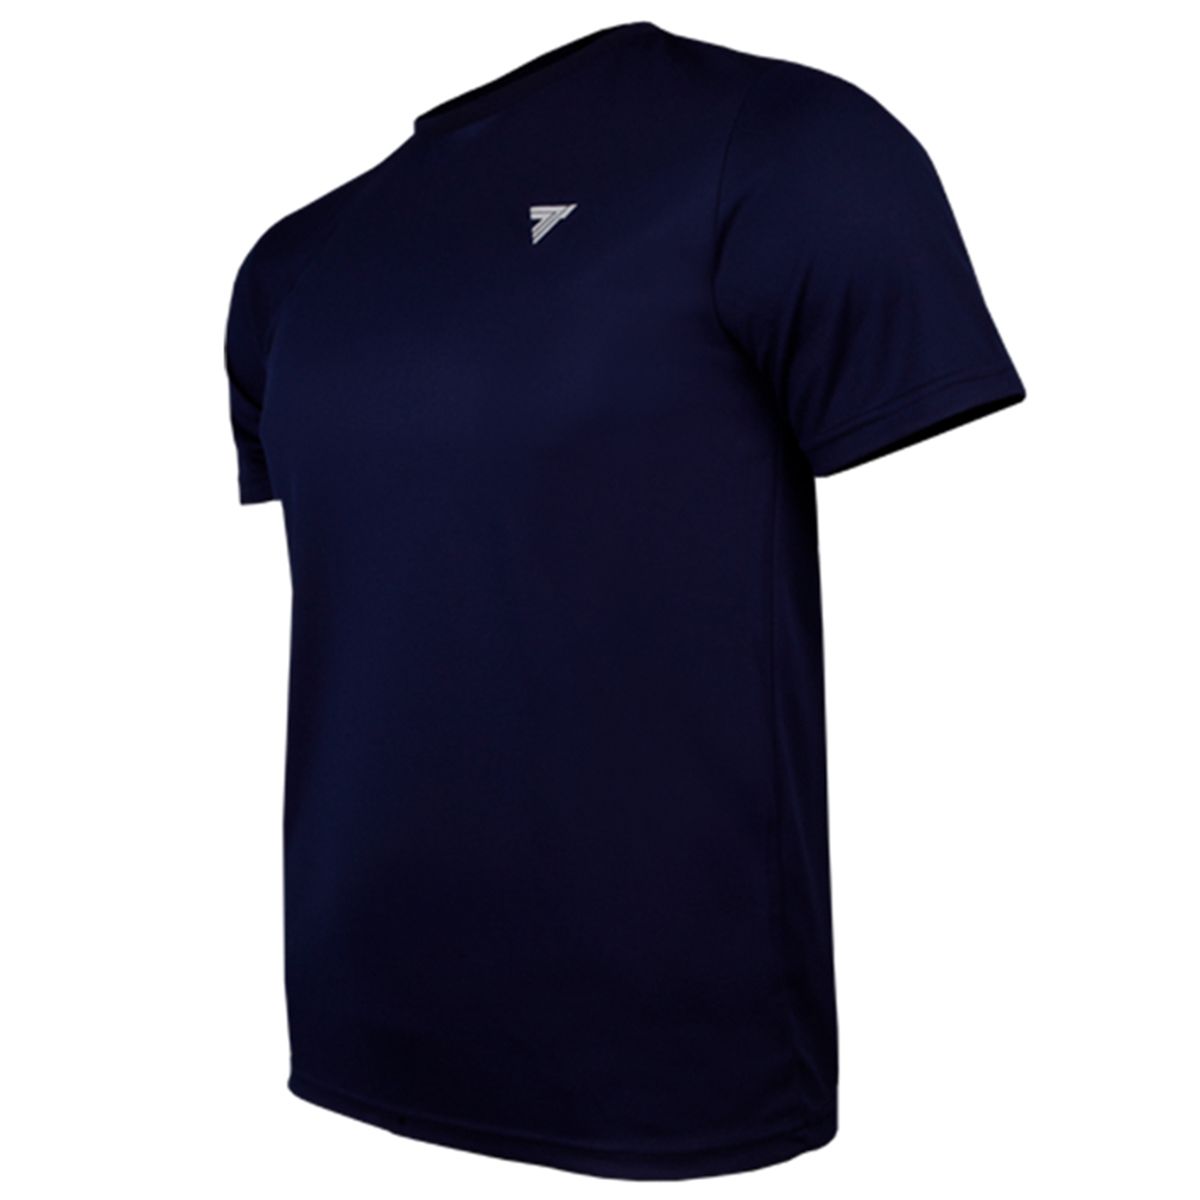 تی شرت ورزشی مردانه ترِک ویر مدل Cooltrec 01 Navy -  - 4